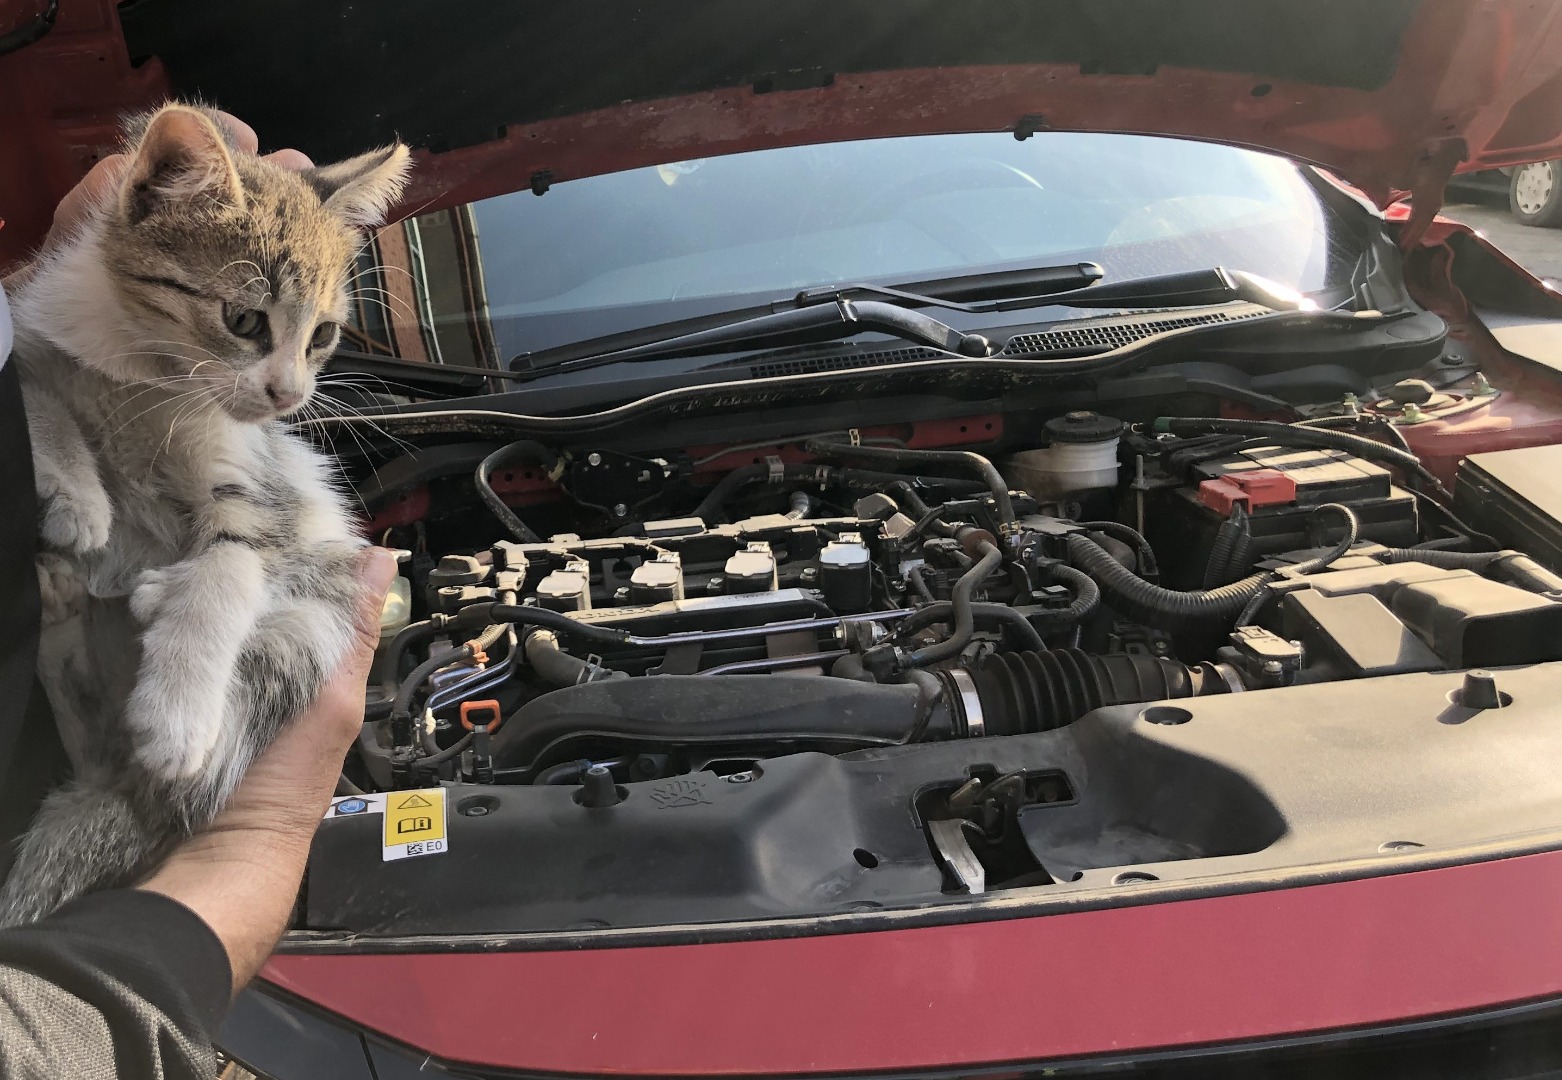 Otomobilin motor kısmına giren yavru kedi kurtarıldı